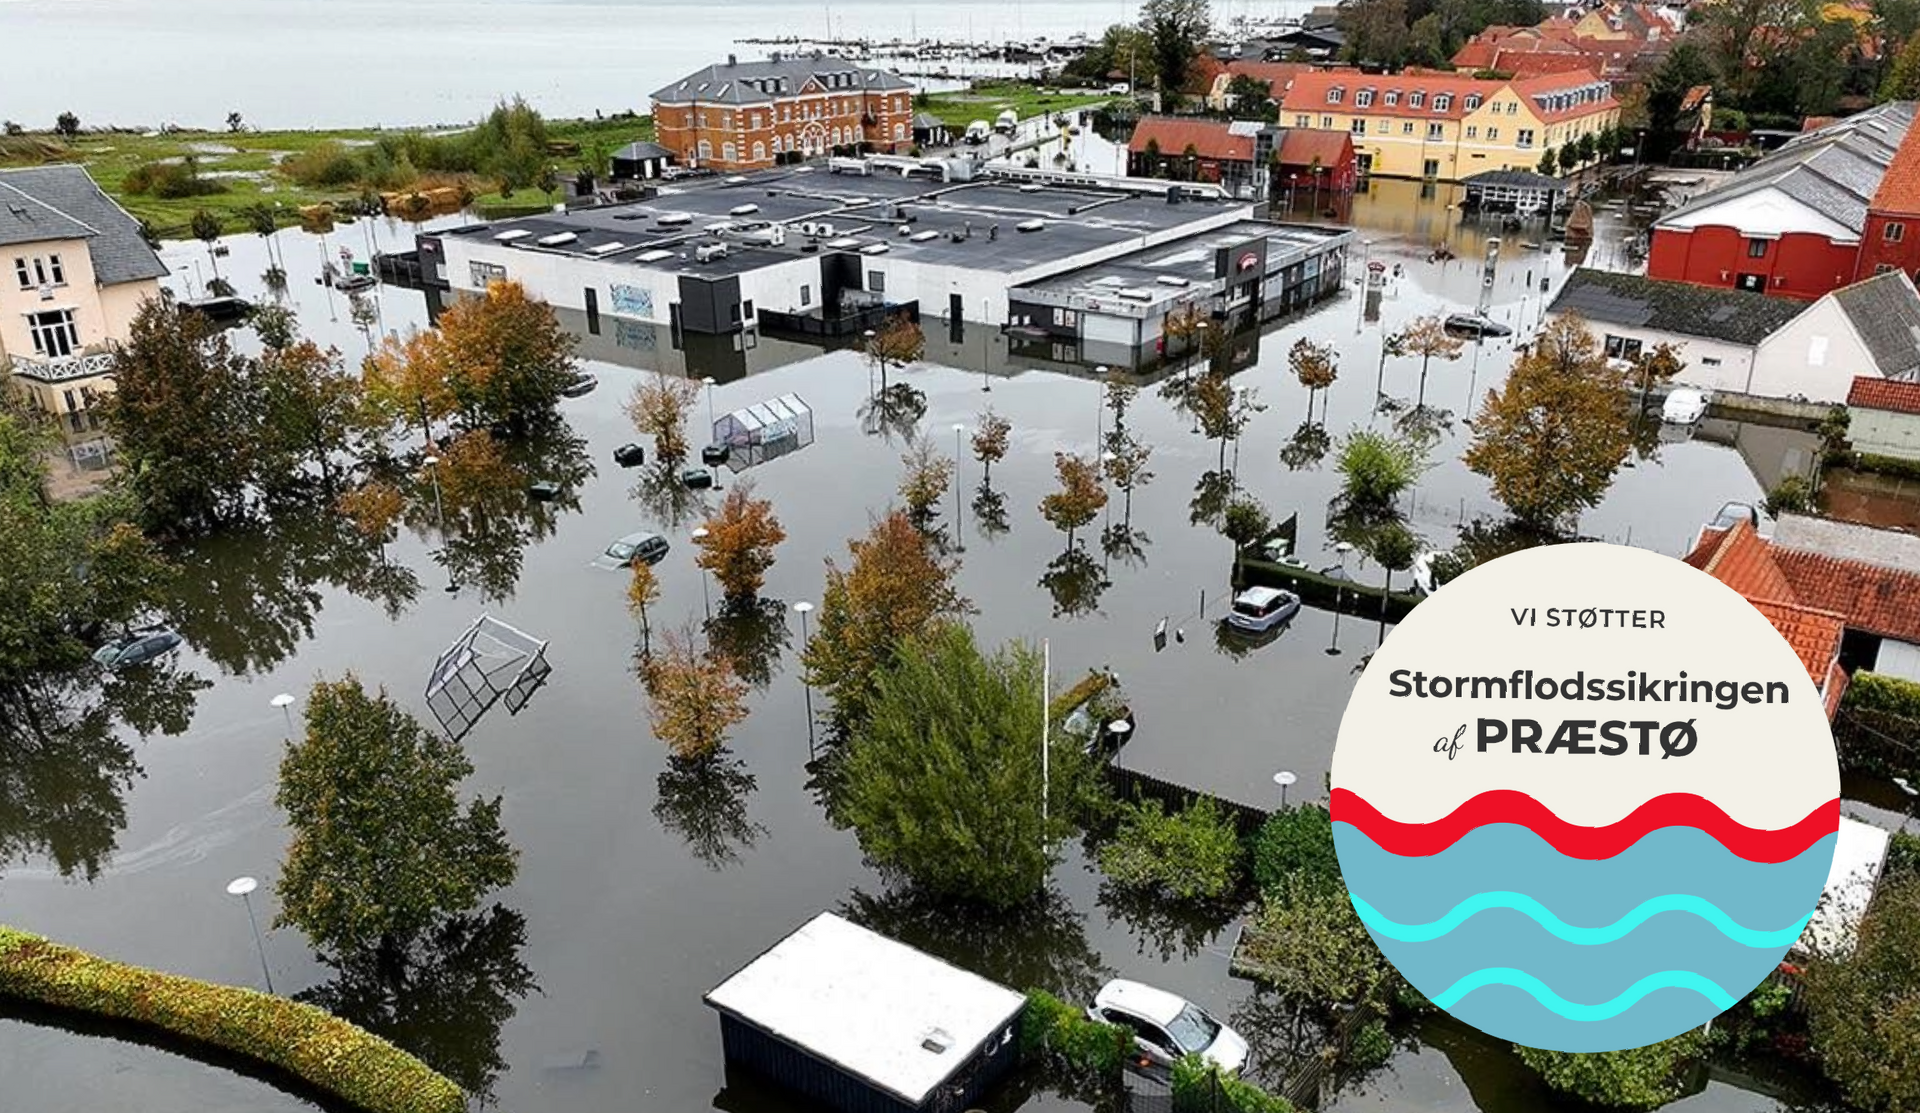 Billede over Præstø under stormfloden i oktober 2023. Logo med: Vi Støtter Stormflodssikringen af Præstø